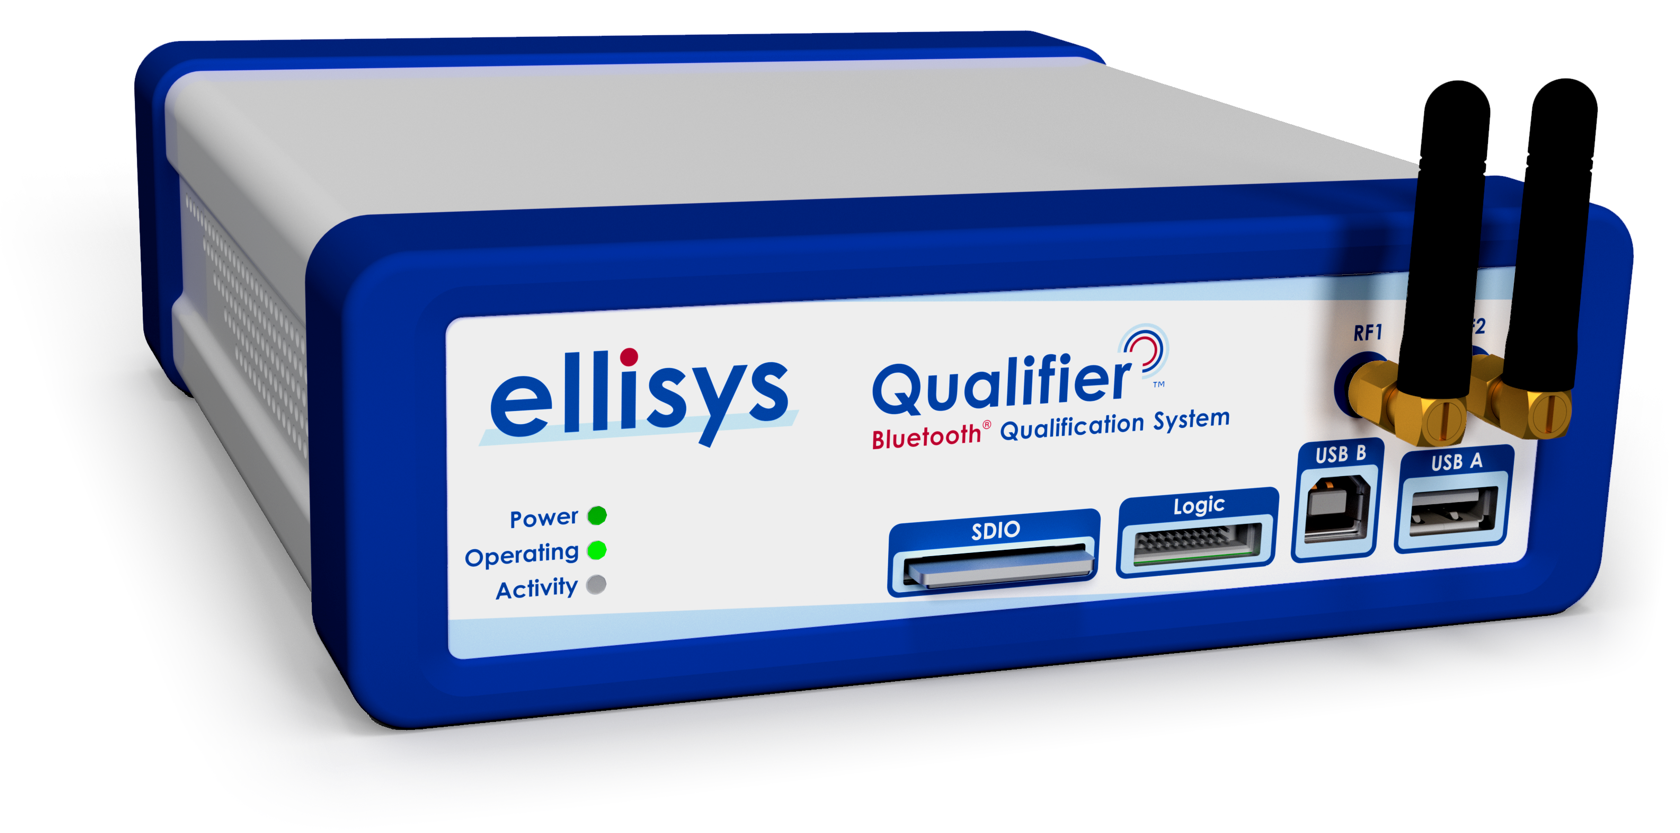 ellisys bluetooth analyzer software download